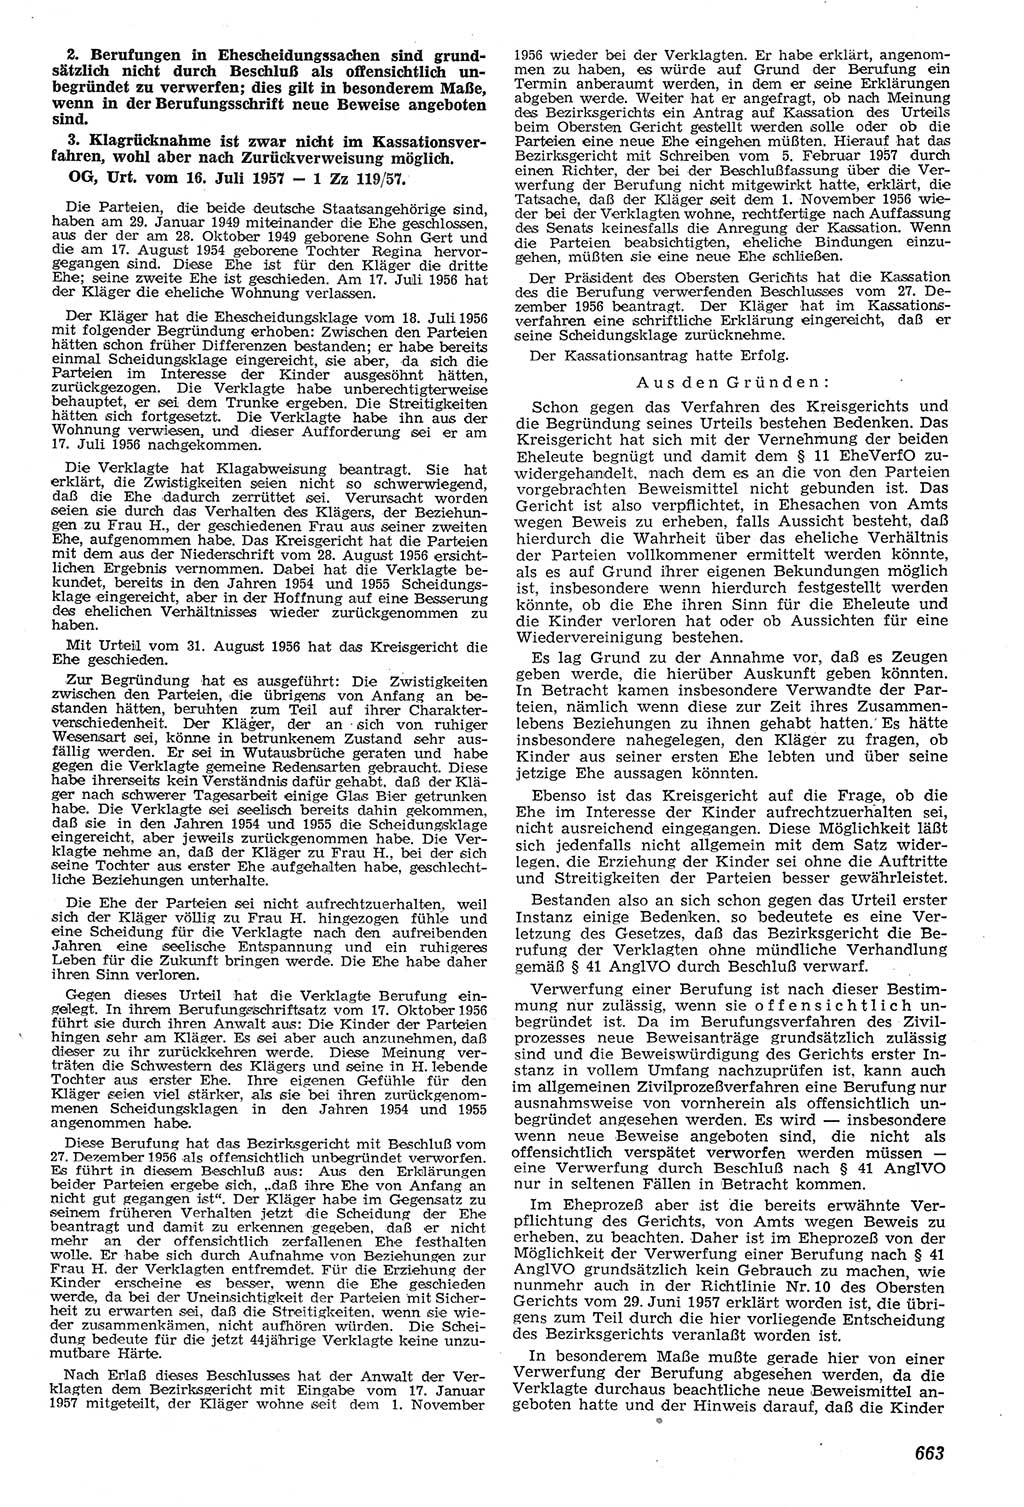 Neue Justiz (NJ), Zeitschrift für Recht und Rechtswissenschaft [Deutsche Demokratische Republik (DDR)], 11. Jahrgang 1957, Seite 663 (NJ DDR 1957, S. 663)